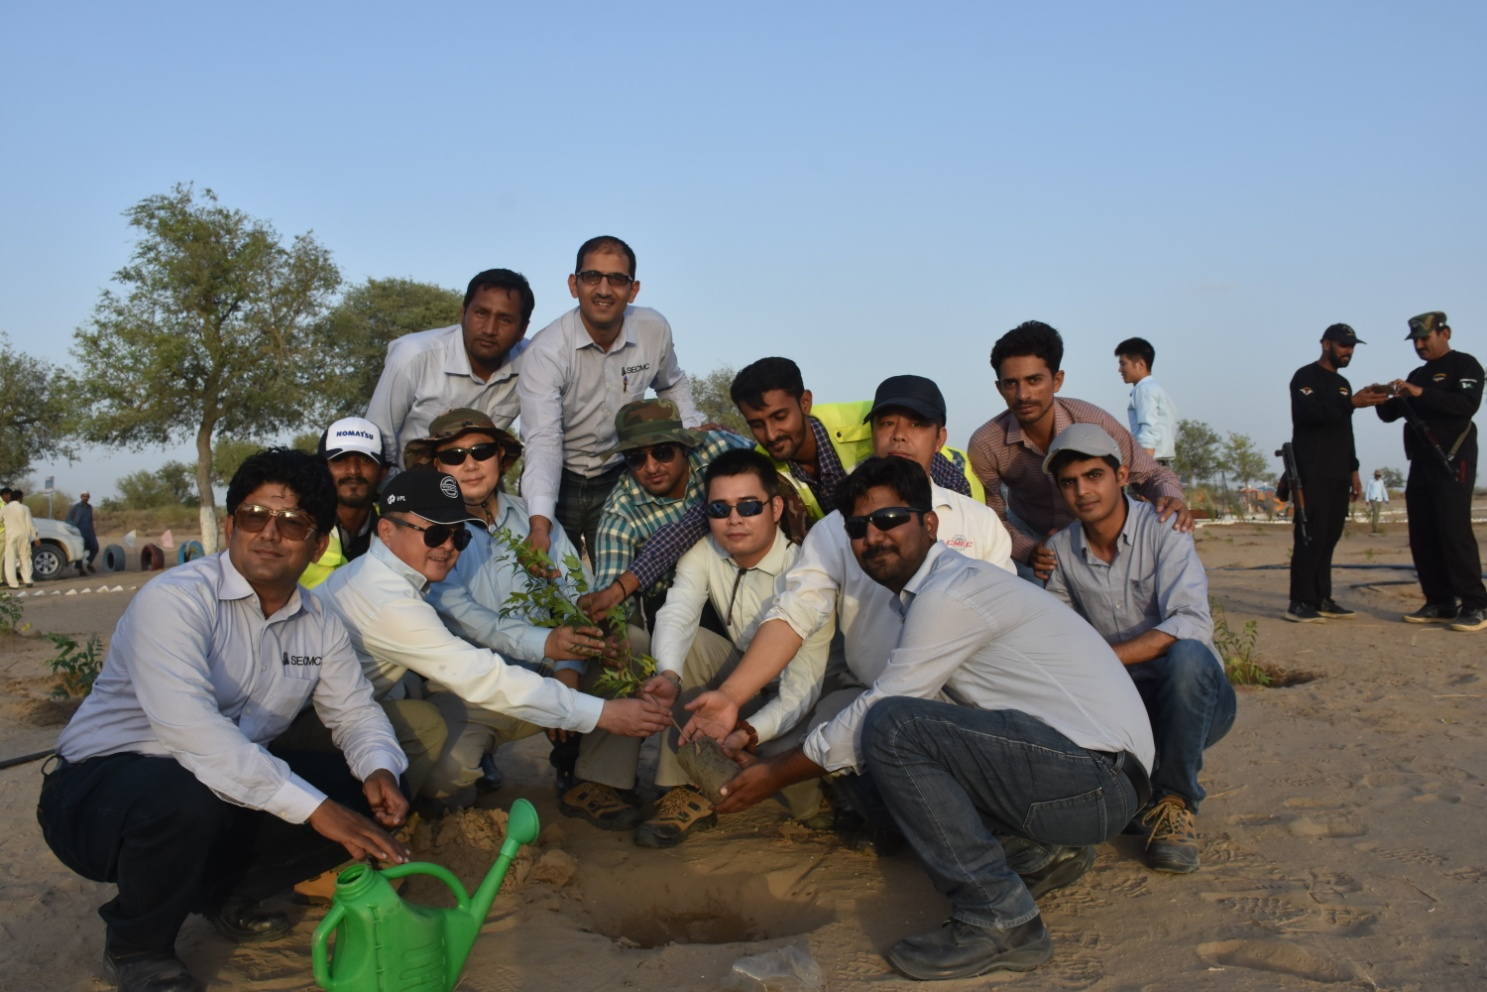 Thar Million Tree Program a miracle in the desert